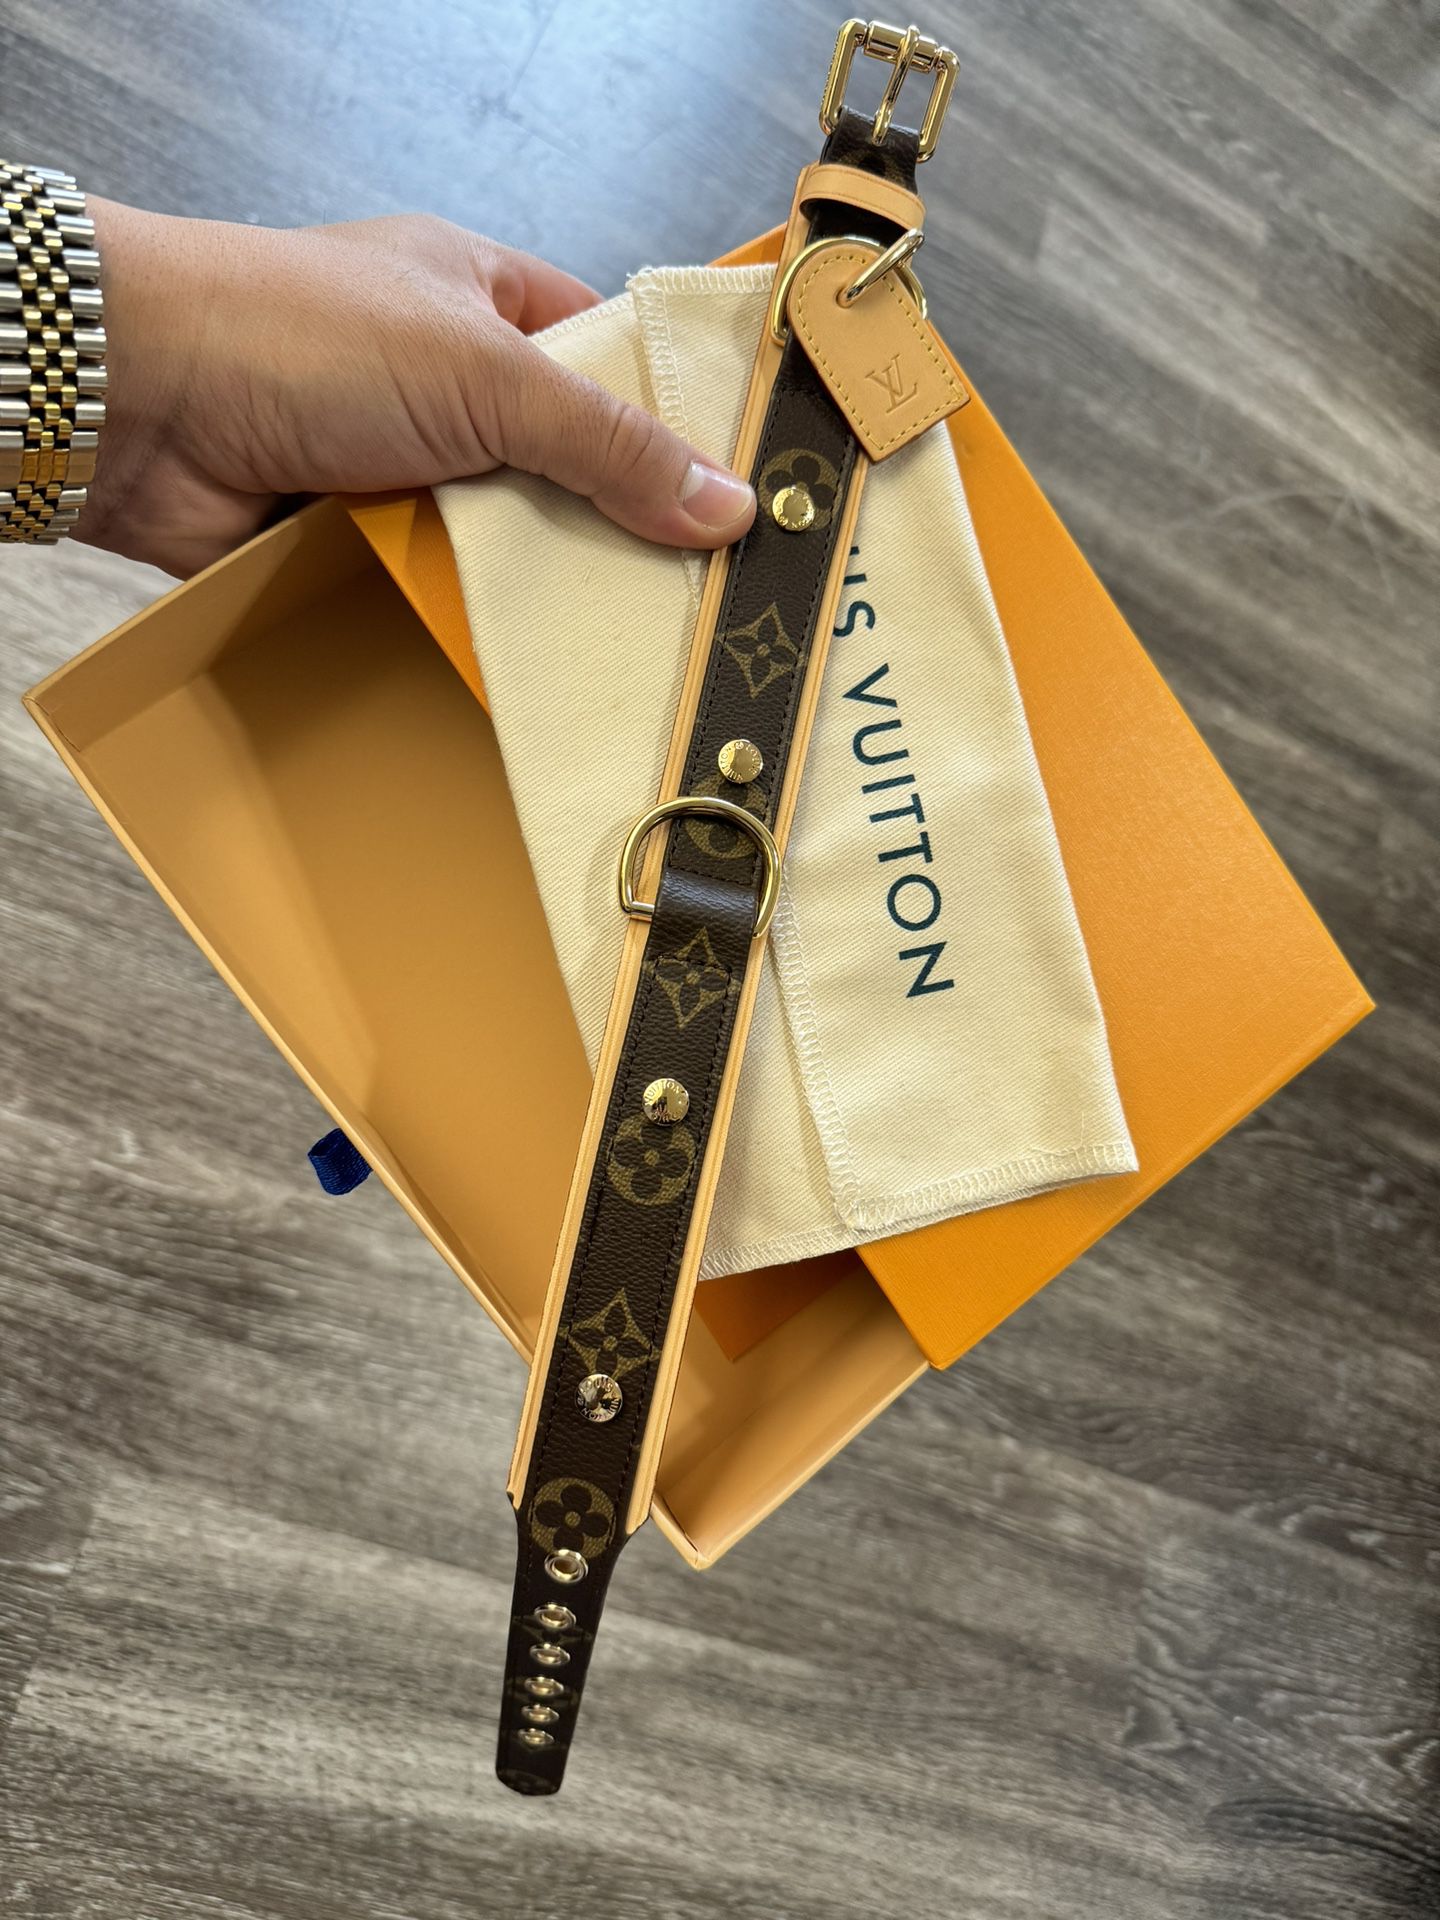 Louis Vuitton Dog Collar 